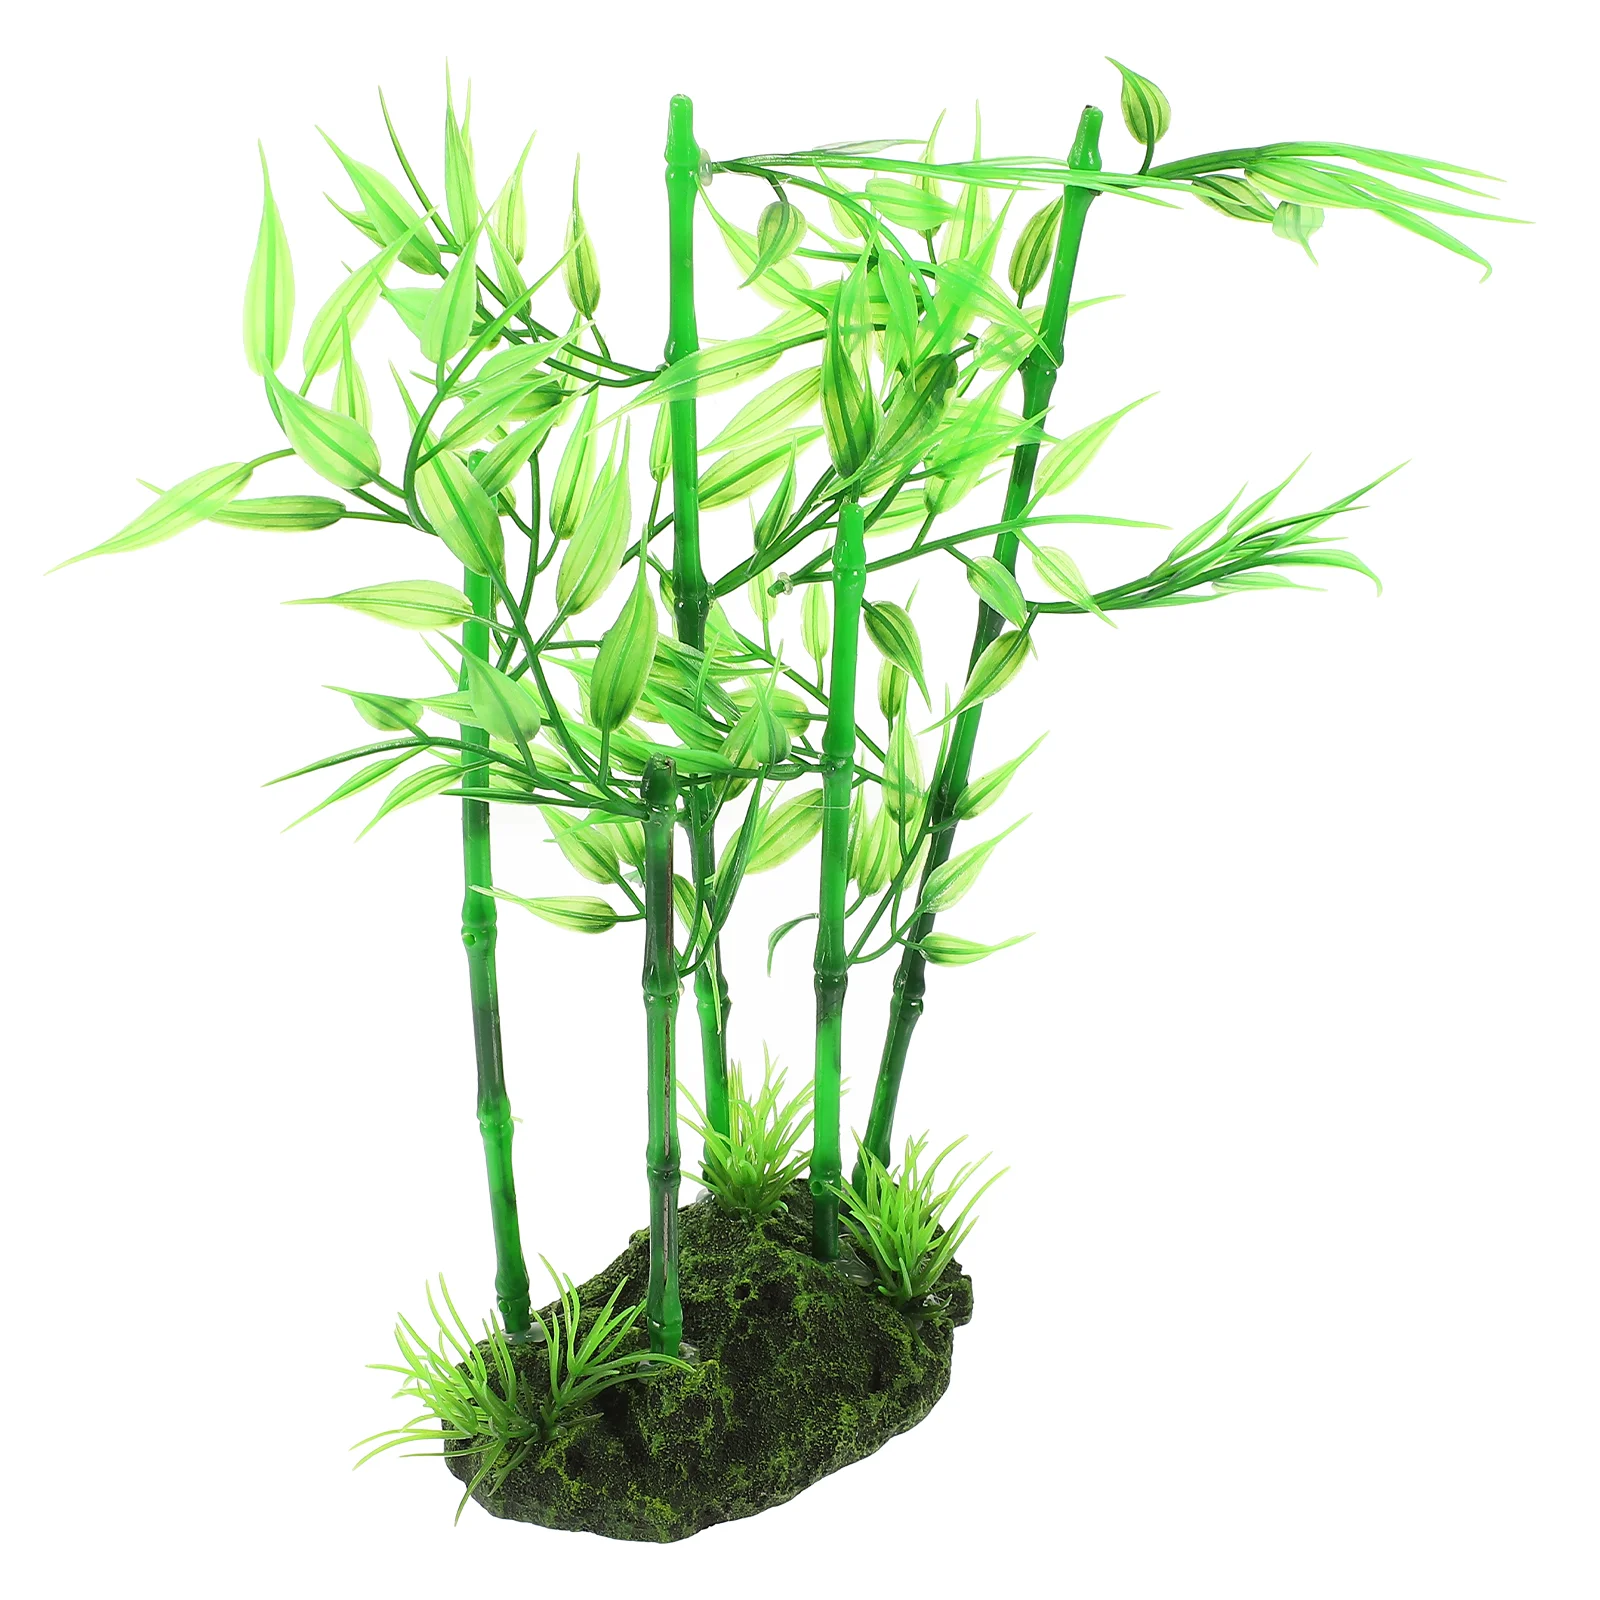 

Аквариумное растение, украшение для аквариума, пластиковая имитация Betta, ландшафтное озеленение (листья травы)